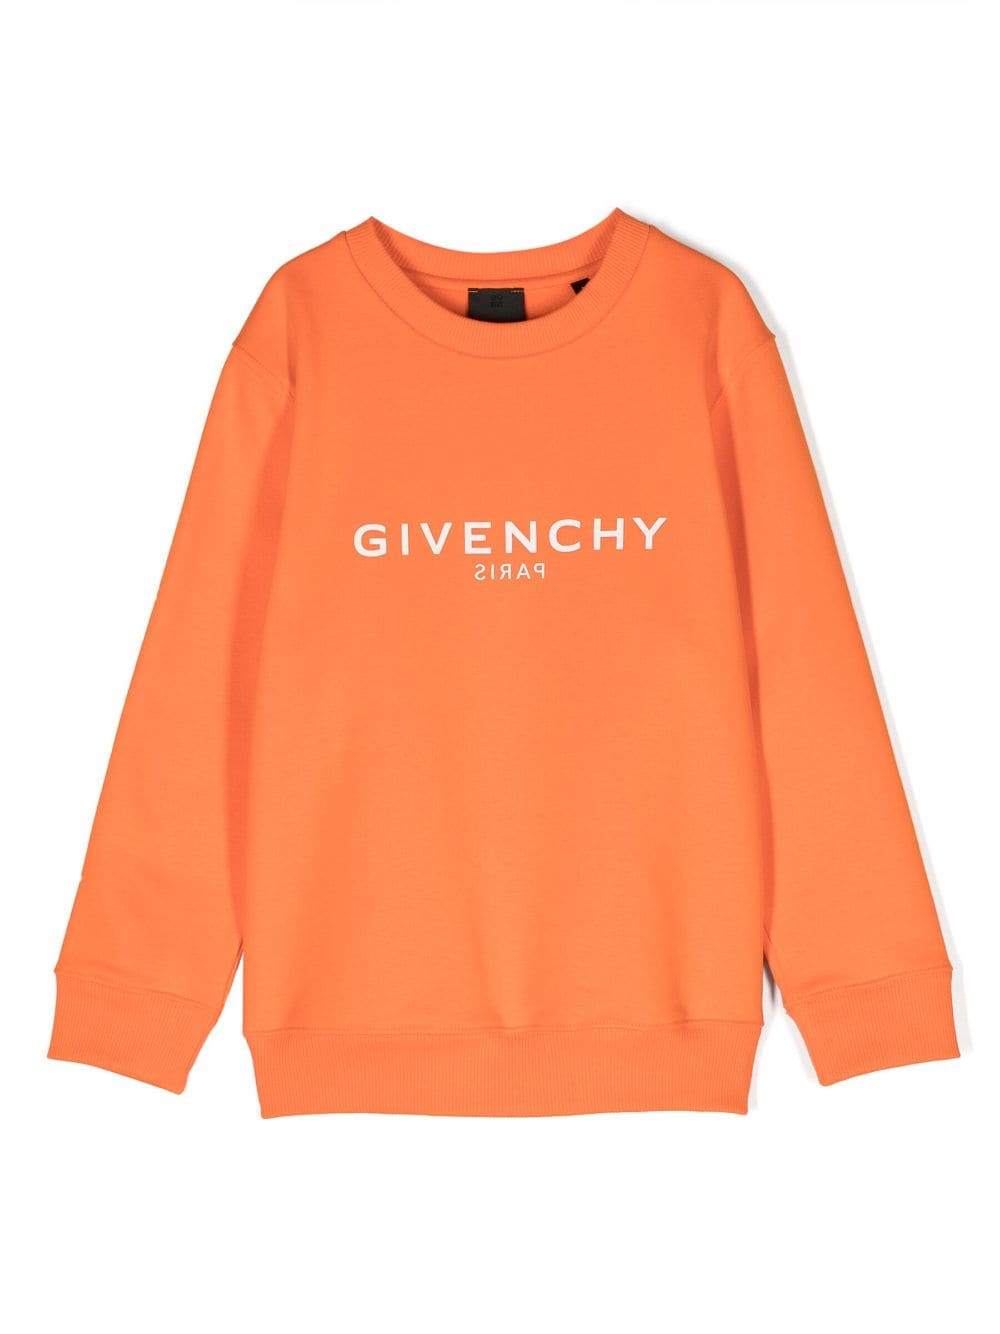 Orange sweatshirt for children with logo